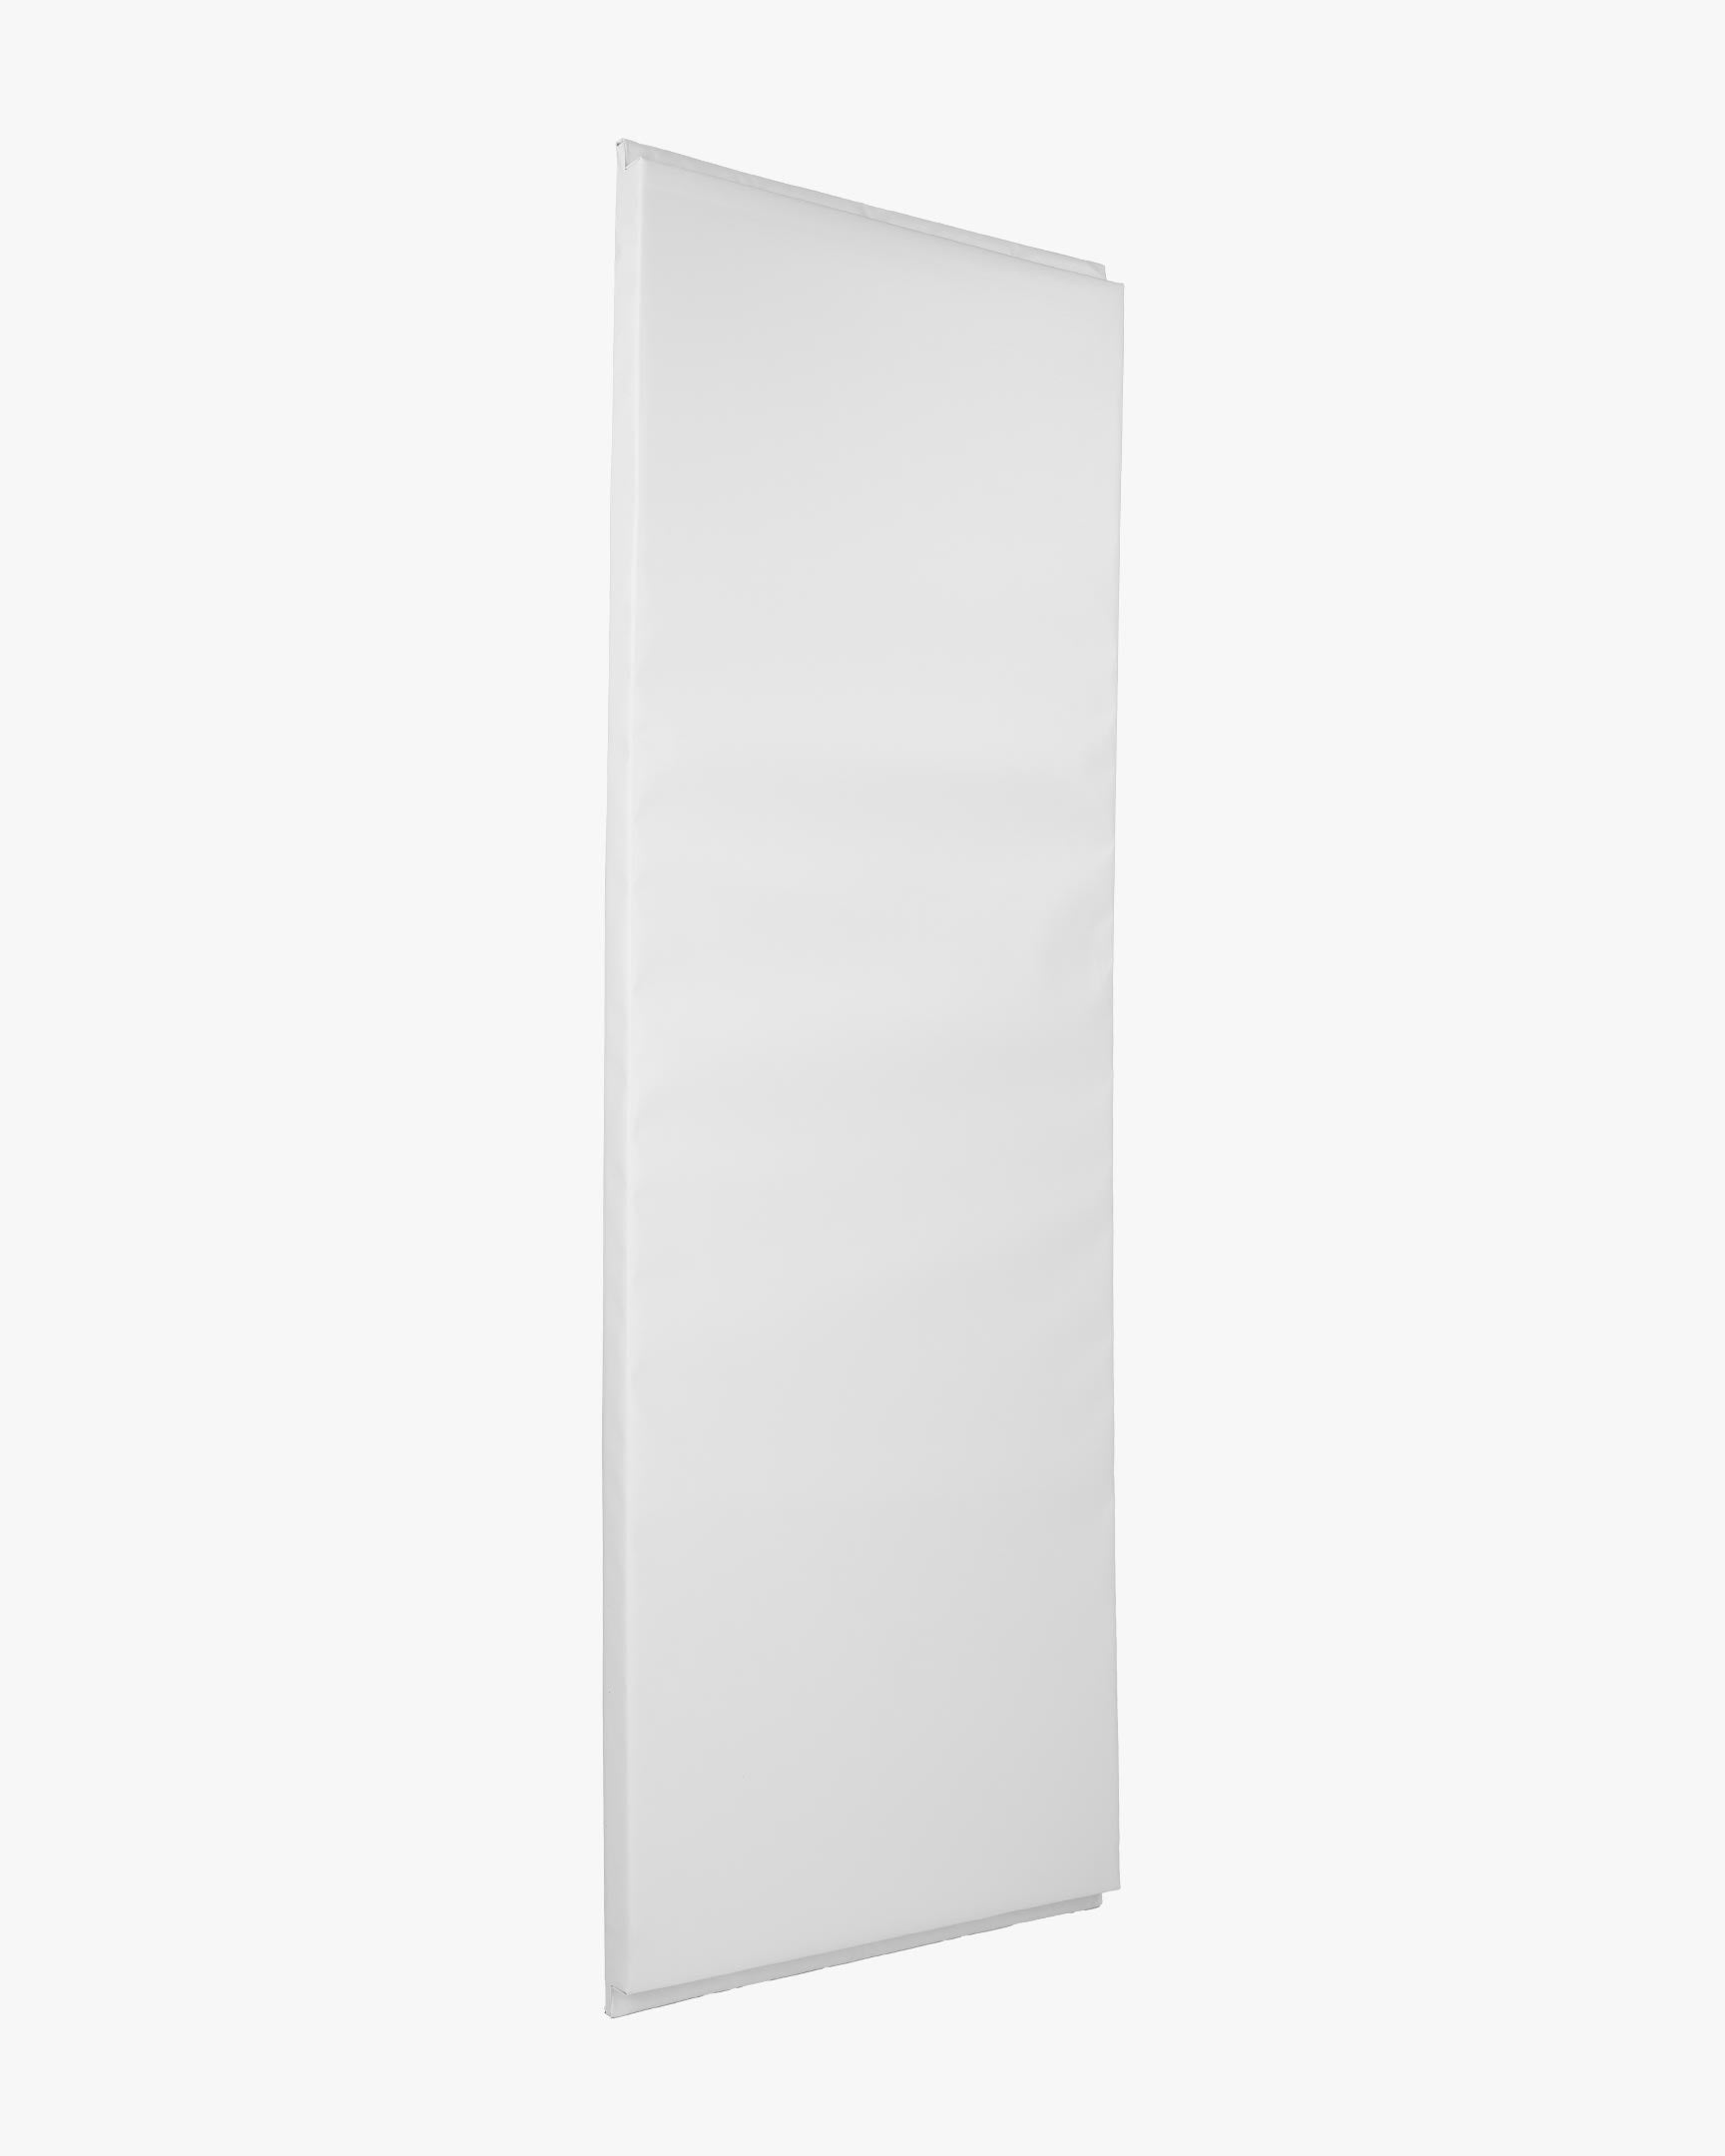 Wall Pad 2' x 6' White